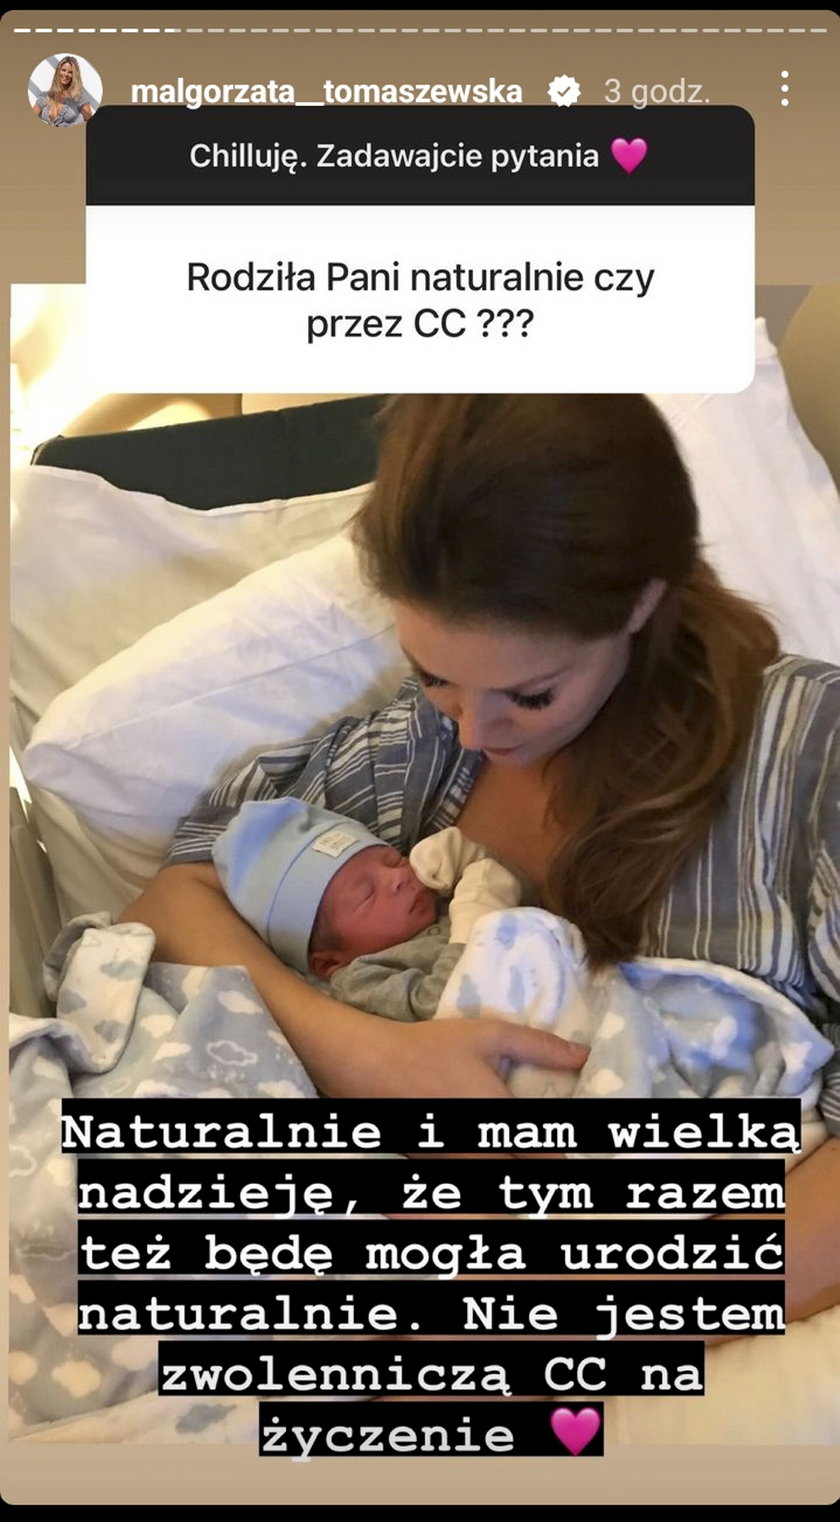 Małgorzata Tomaszewska pokazała zdjęcie, które wykonano jej tuż po urodzeniu syna